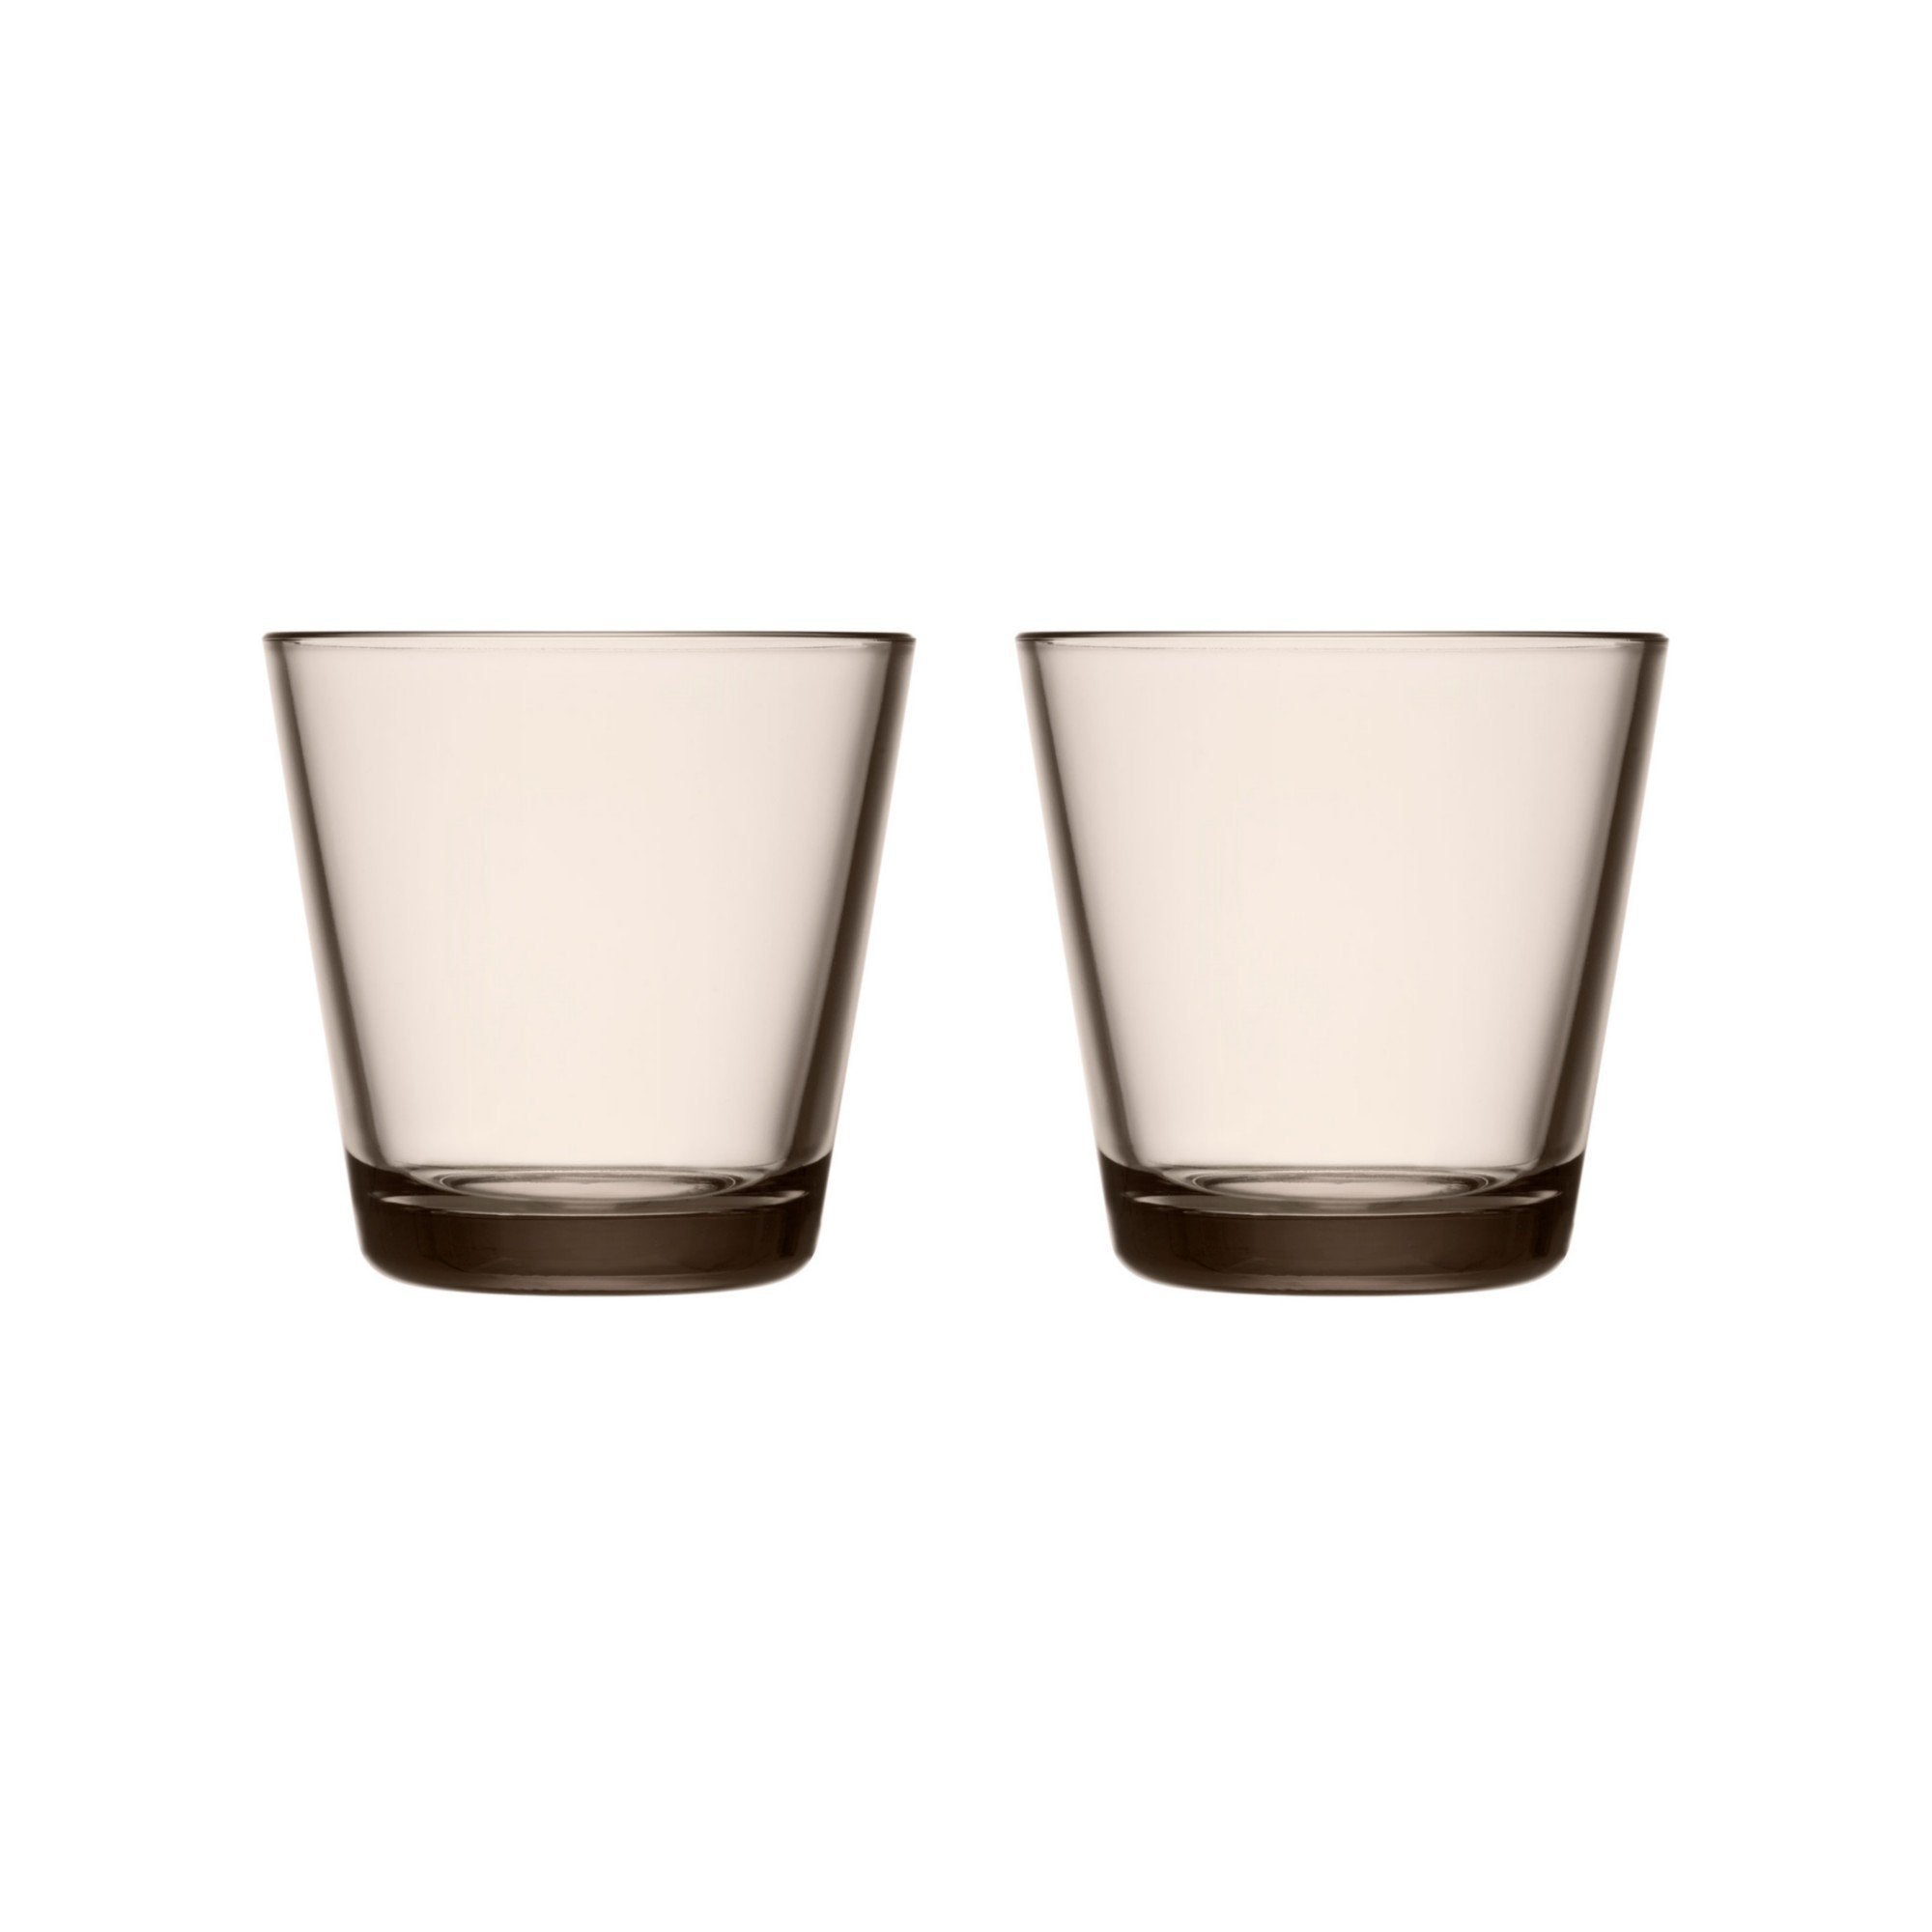 Iittala Katio Drinking Glass Linen 21cl, 2pcs.